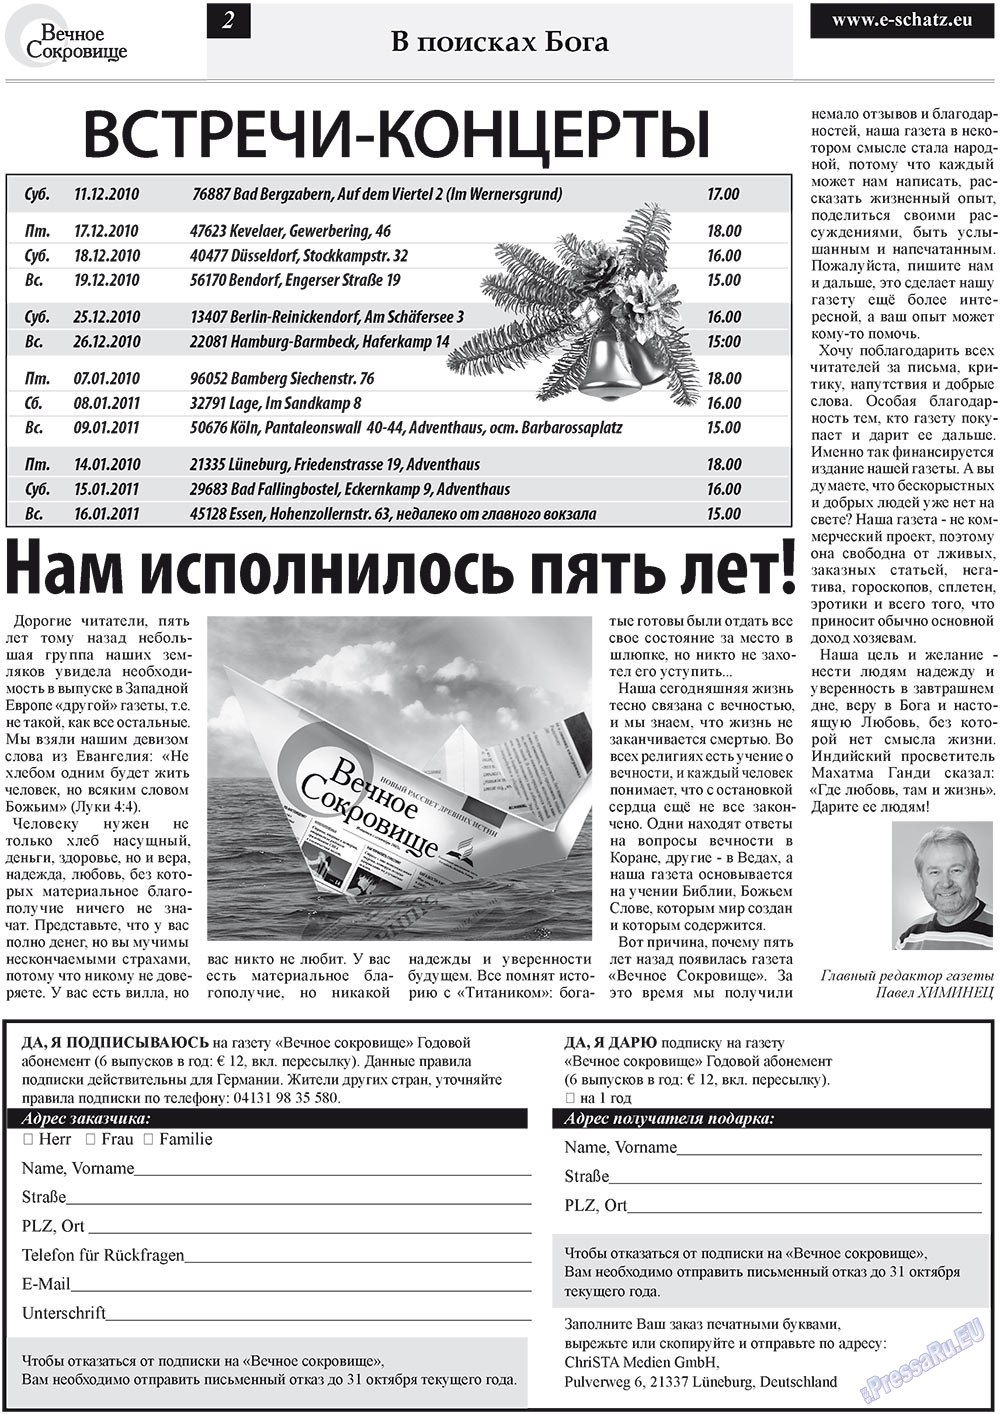 Вечное сокровище (газета). 2010 год, номер 4, стр. 2